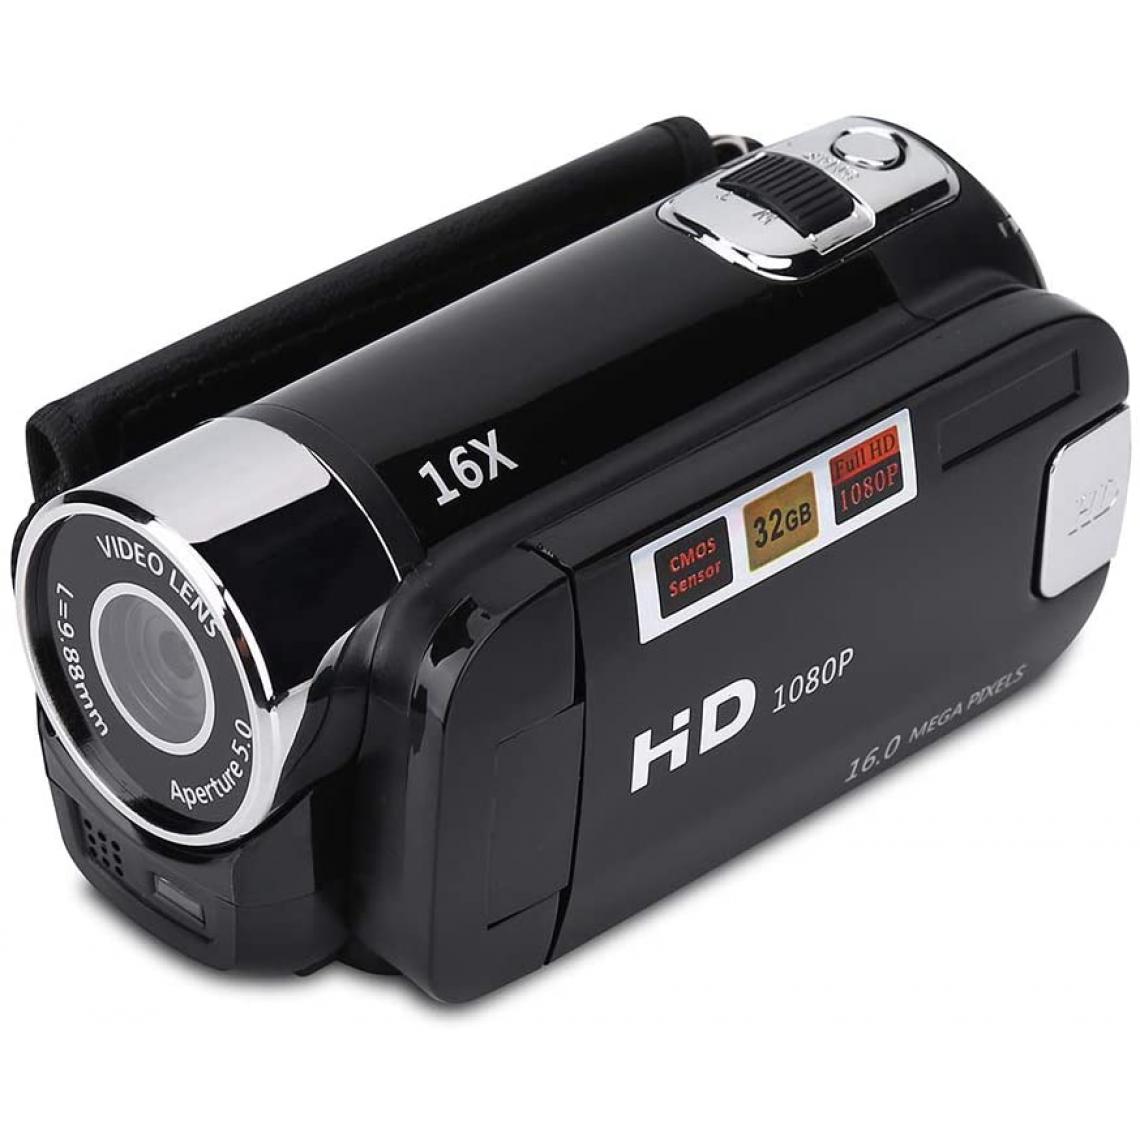 Vendos85 - Caméscope numérique Full HD de 2,7 pouces 1280 x 960 noir - Accessoires caméra